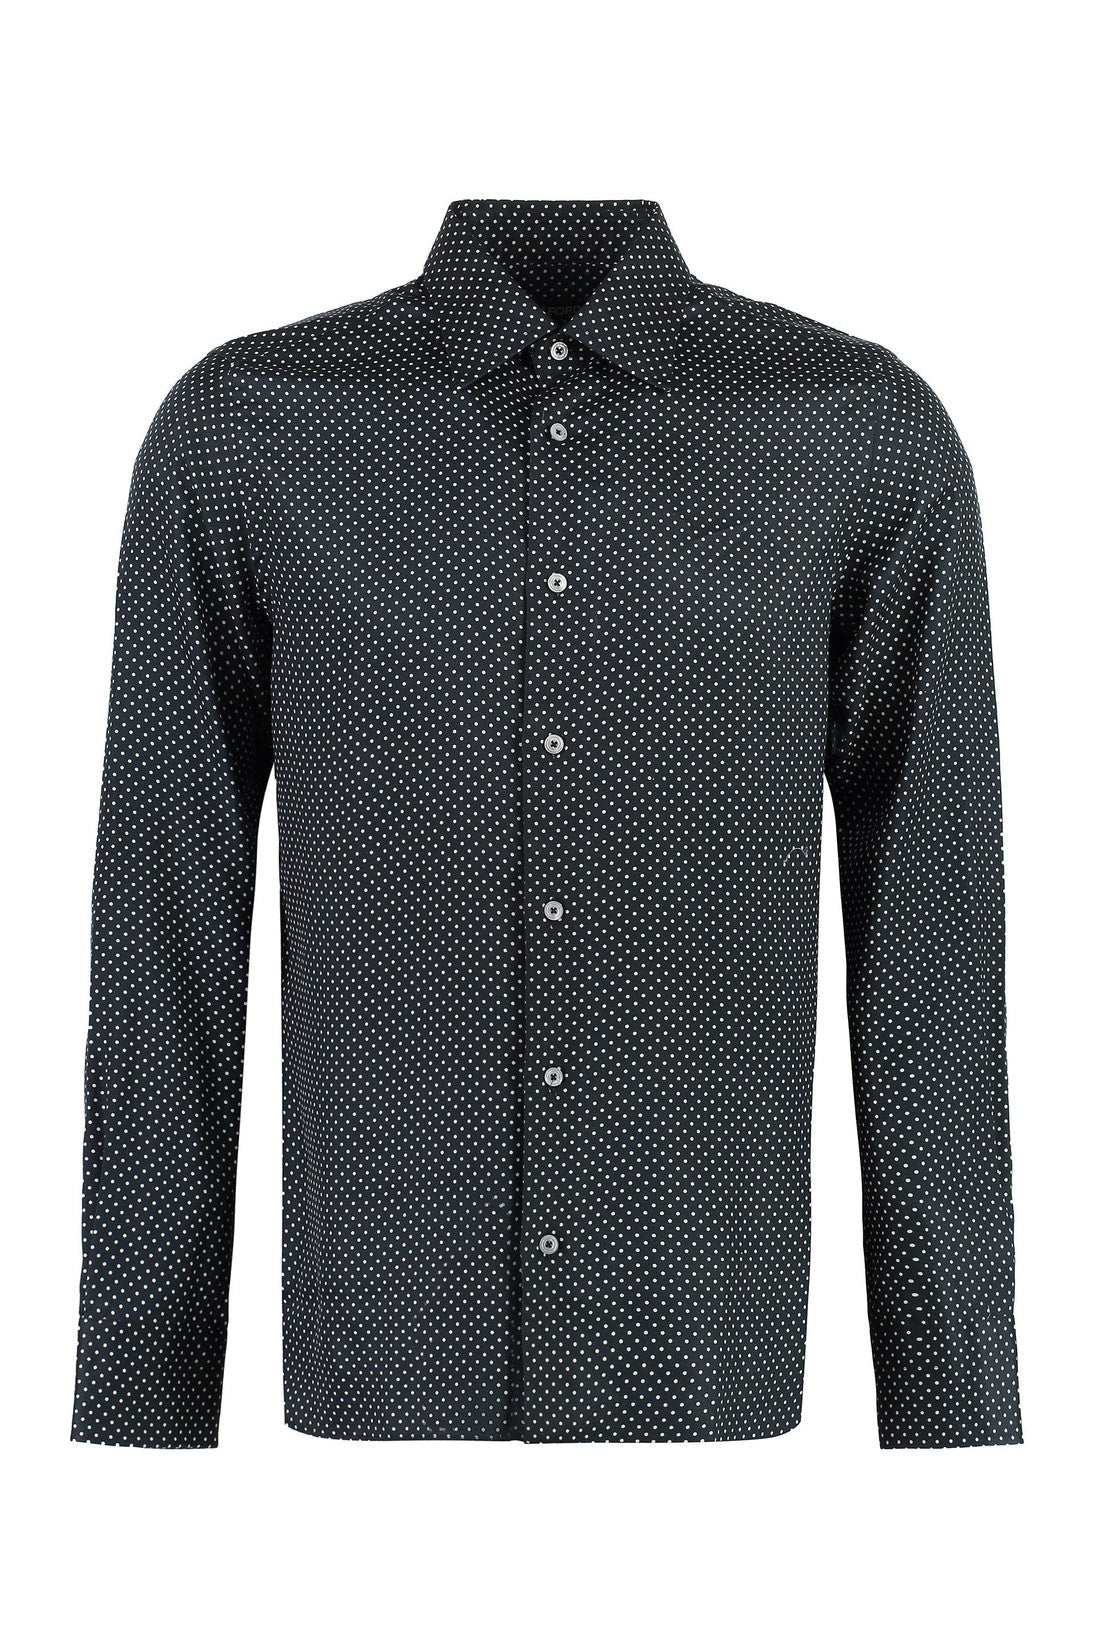 Tom Ford-OUTLET-SALE-Polka-dot motif shirt-ARCHIVIST